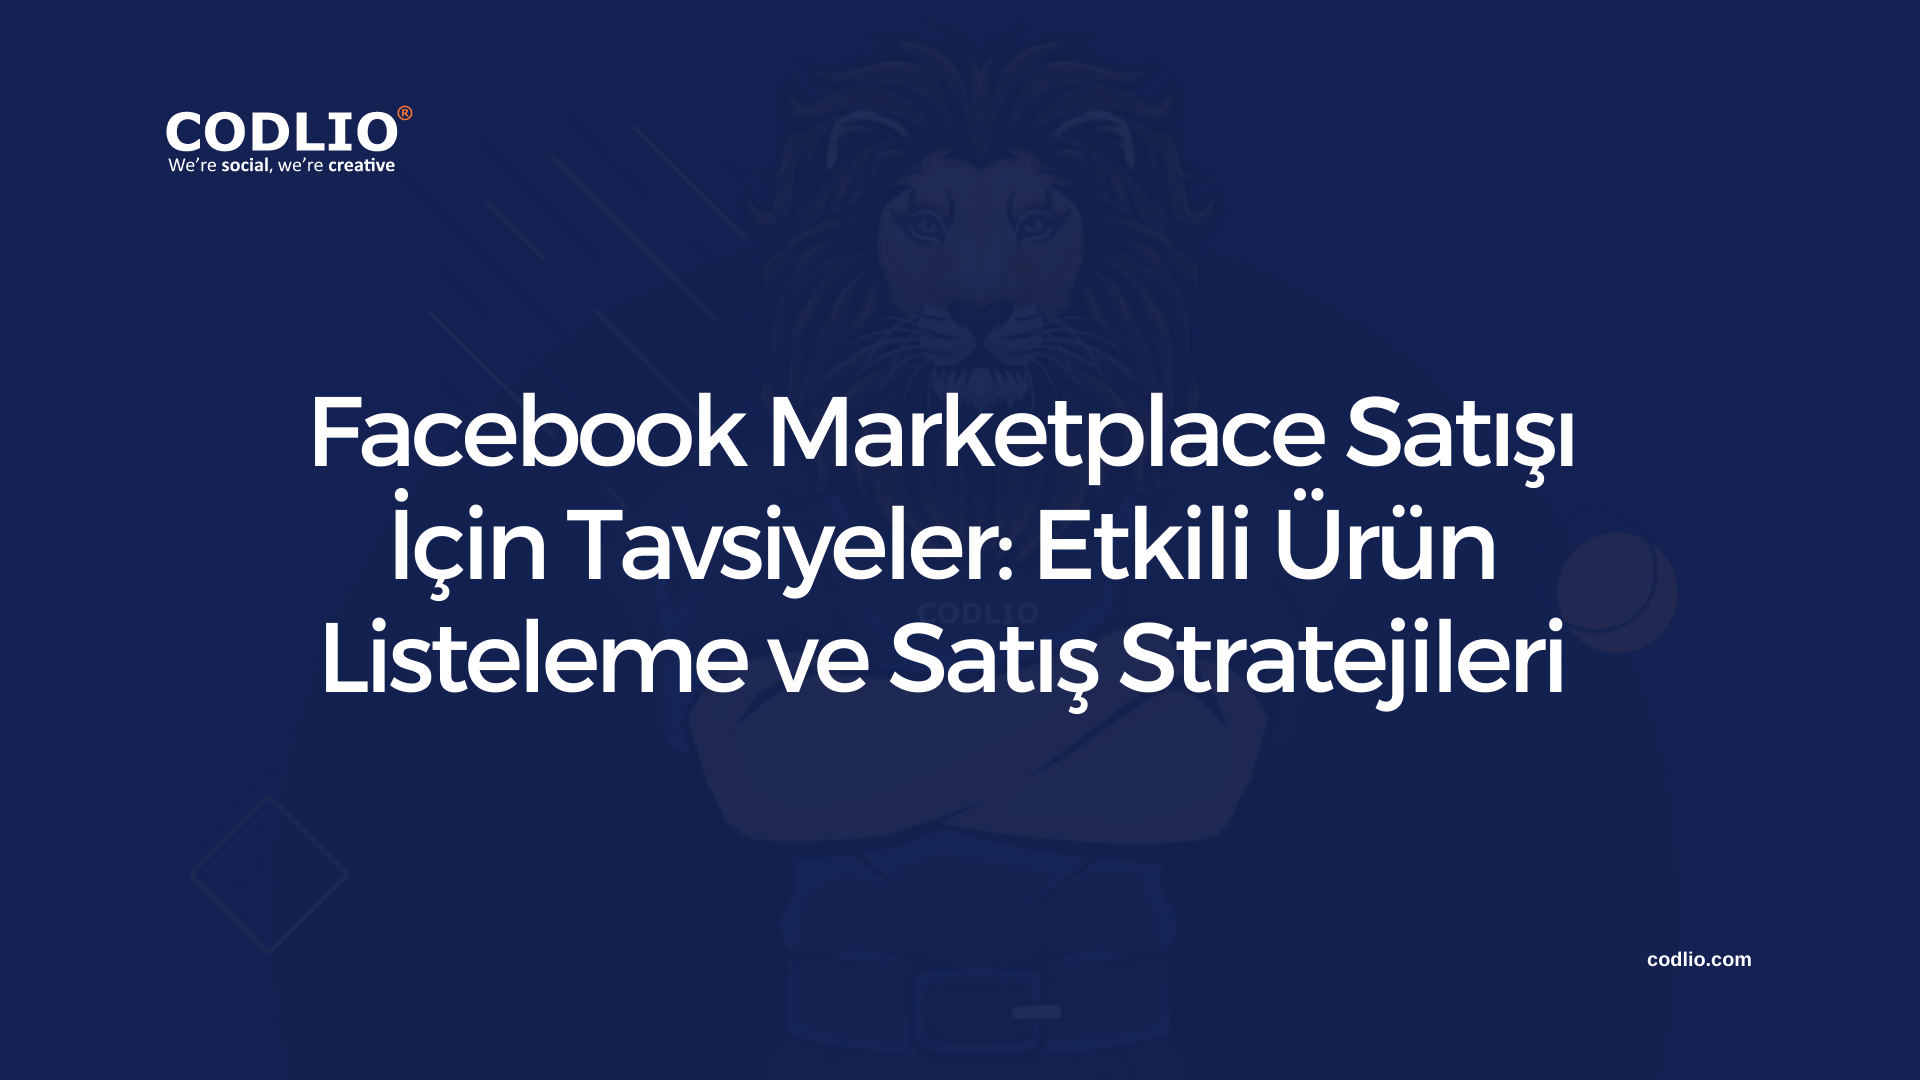 Facebook Marketplace Satışı İçin Tavsiyeler: Etkili Ürün Listeleme ve Satış Stratejileri